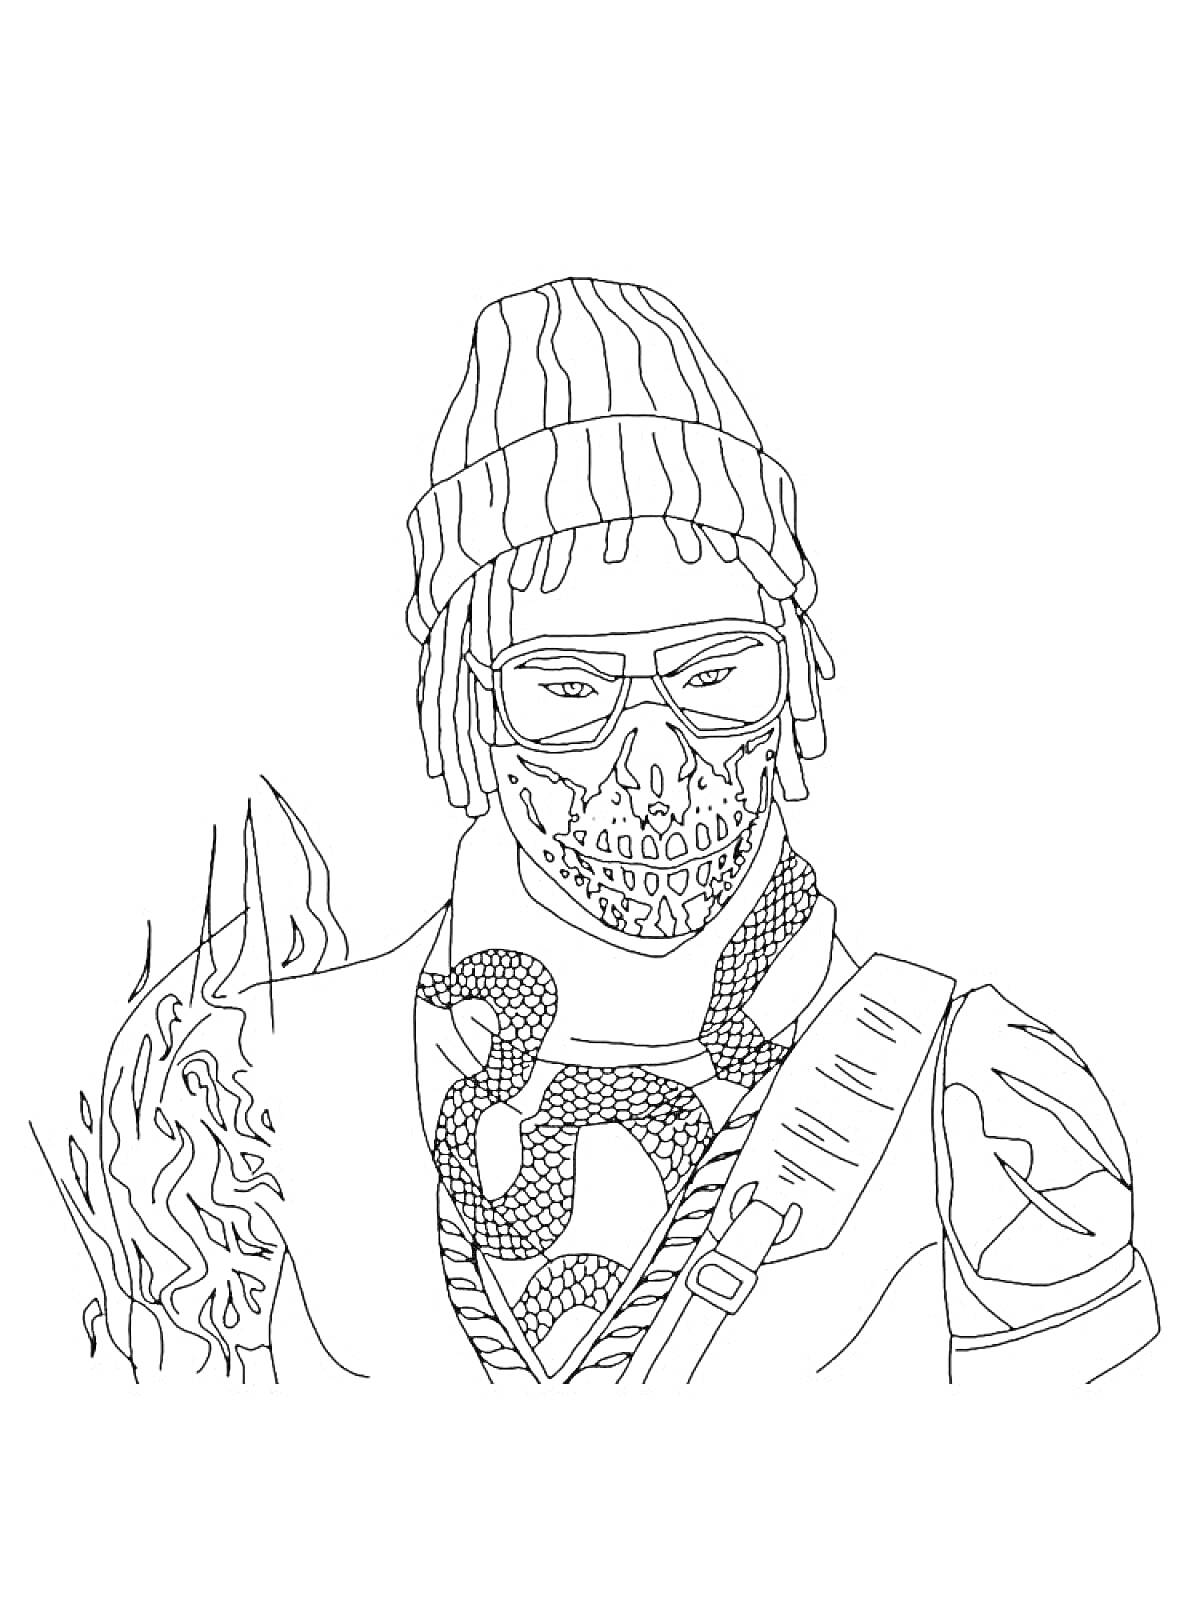 Раскраска Персонаж в зимней шапке с косичками, солнцезащитными очками и маской с рисунком черепа, снаряженный в боевую экипировку, правая рука с огненным эффектом